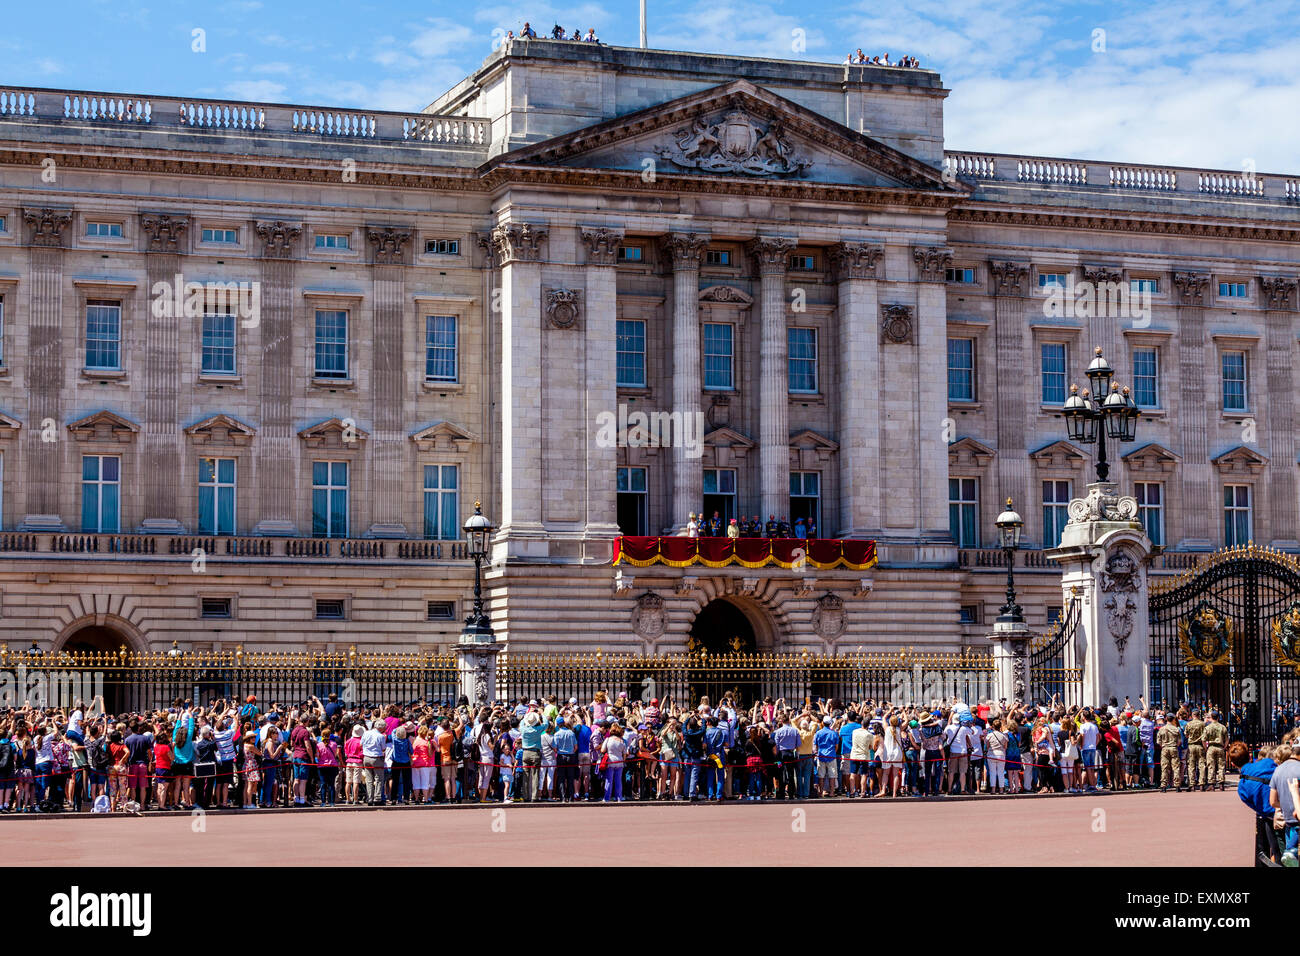 La famille royale britannique sur le balcon de Buckingham Palace, Londres, Angleterre Banque D'Images